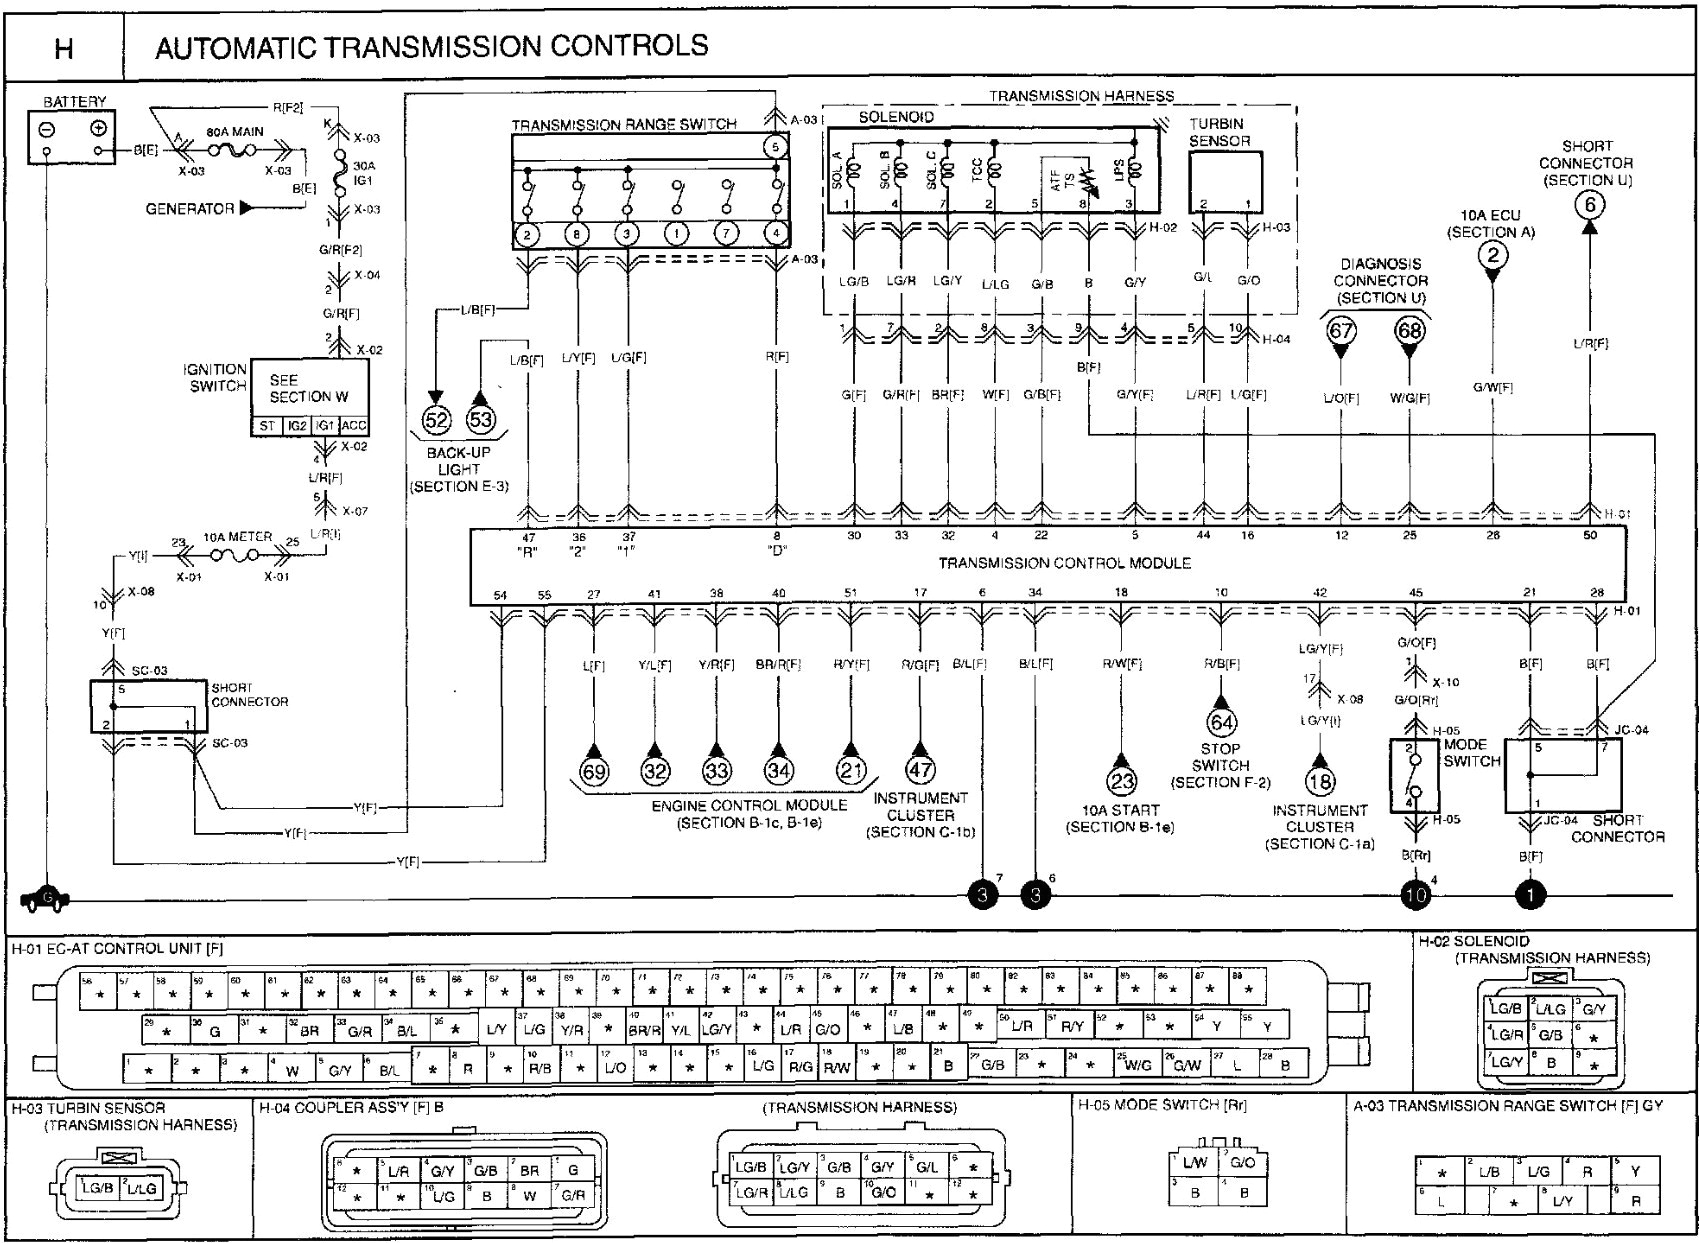 wiring diagram kia sportage 2007 best 2007 kia sportage radio wiring diagram valid 2006 kia sorento stereo of wiring diagram kia sportage 2007 within 2006 kia sorento wiring diagram png